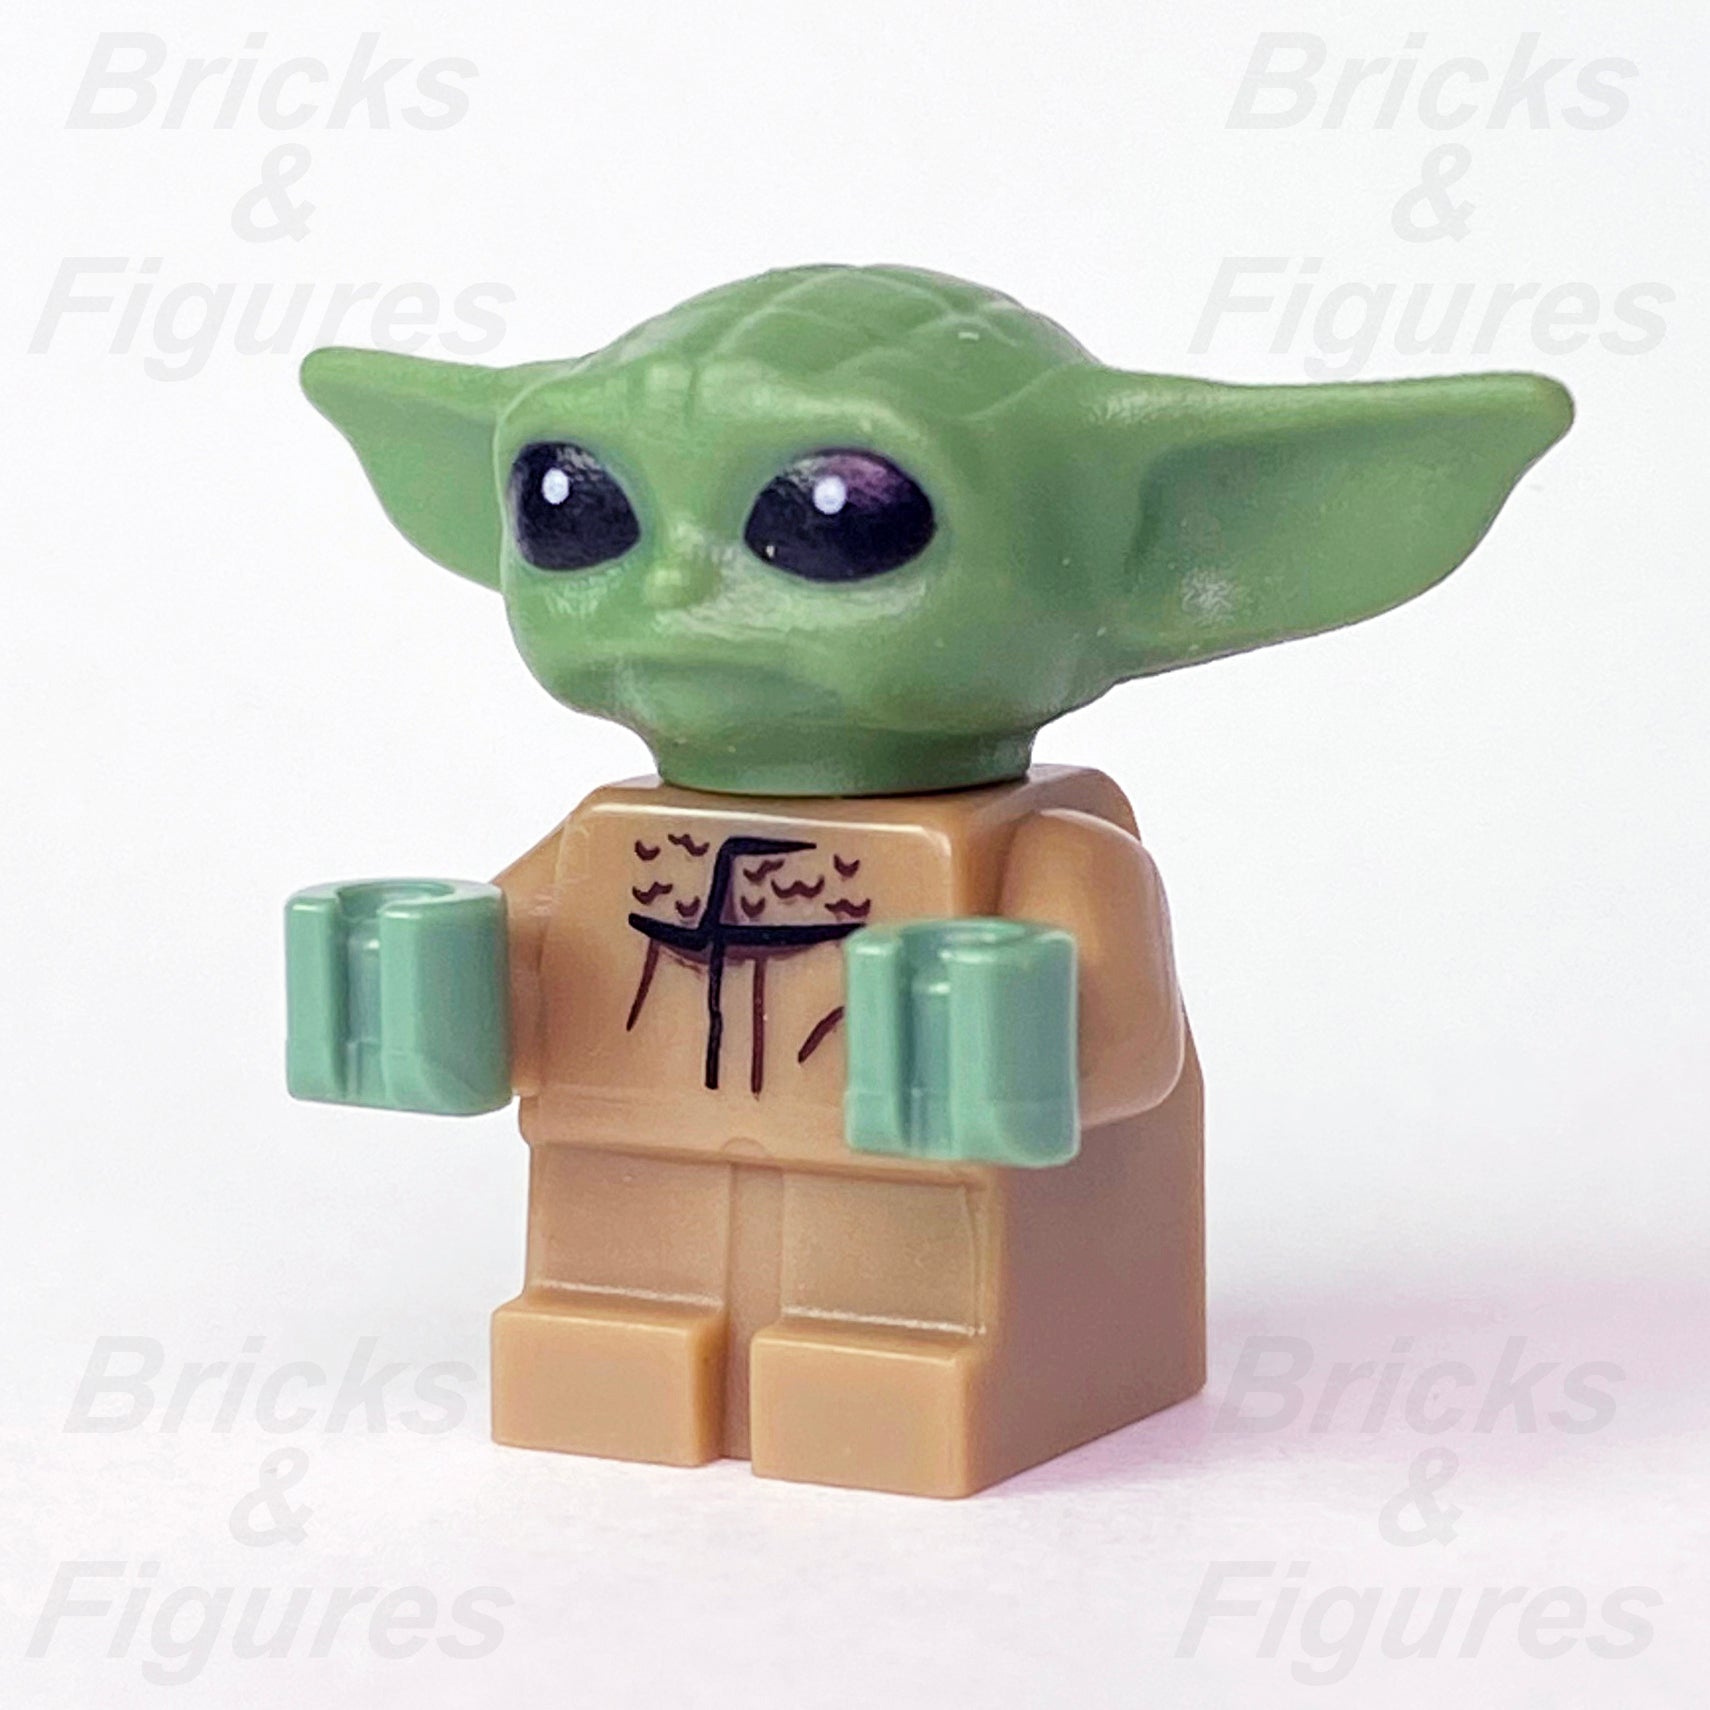 LEGO Baby Yoda Minifigures